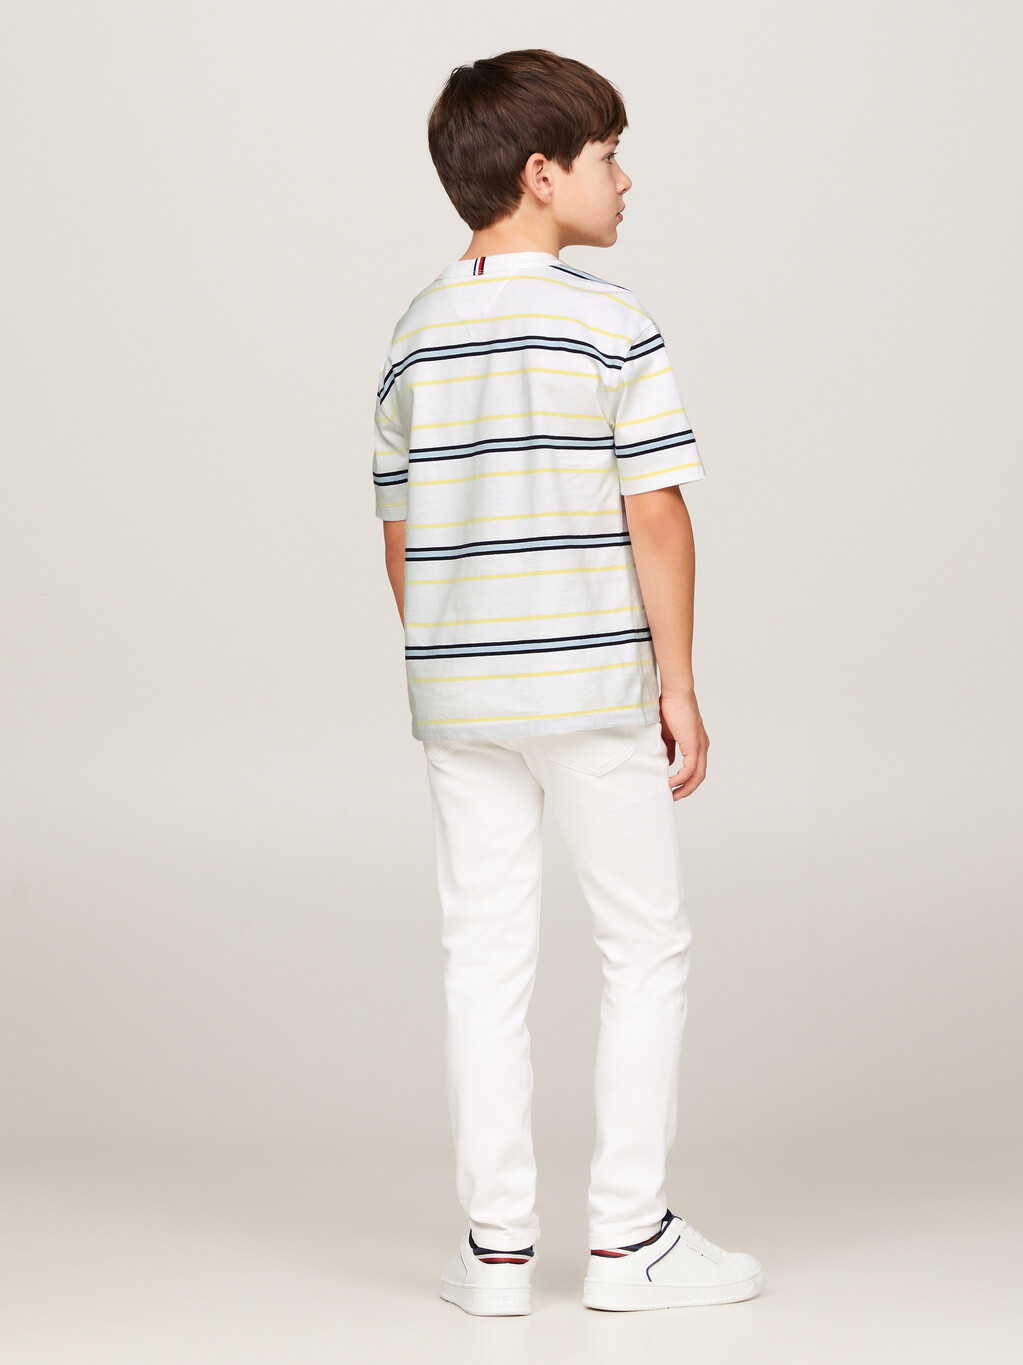 Hilfiger Monotype Stripe T-Shirt, White Base/Yellow Stripe, hi-res